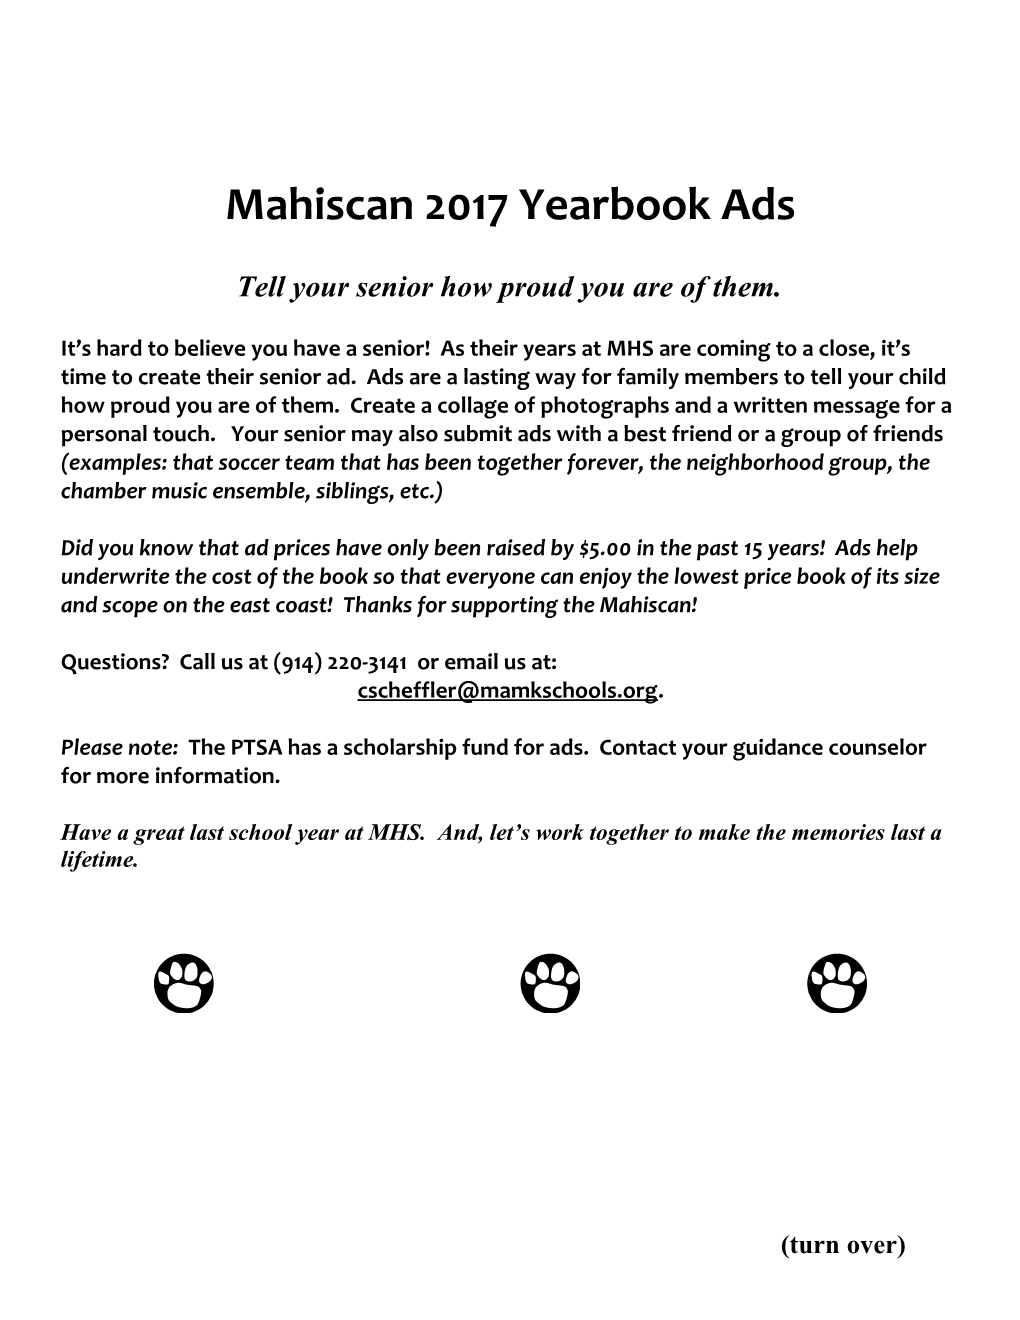 Mahiscan 2010 Yearbook Ads